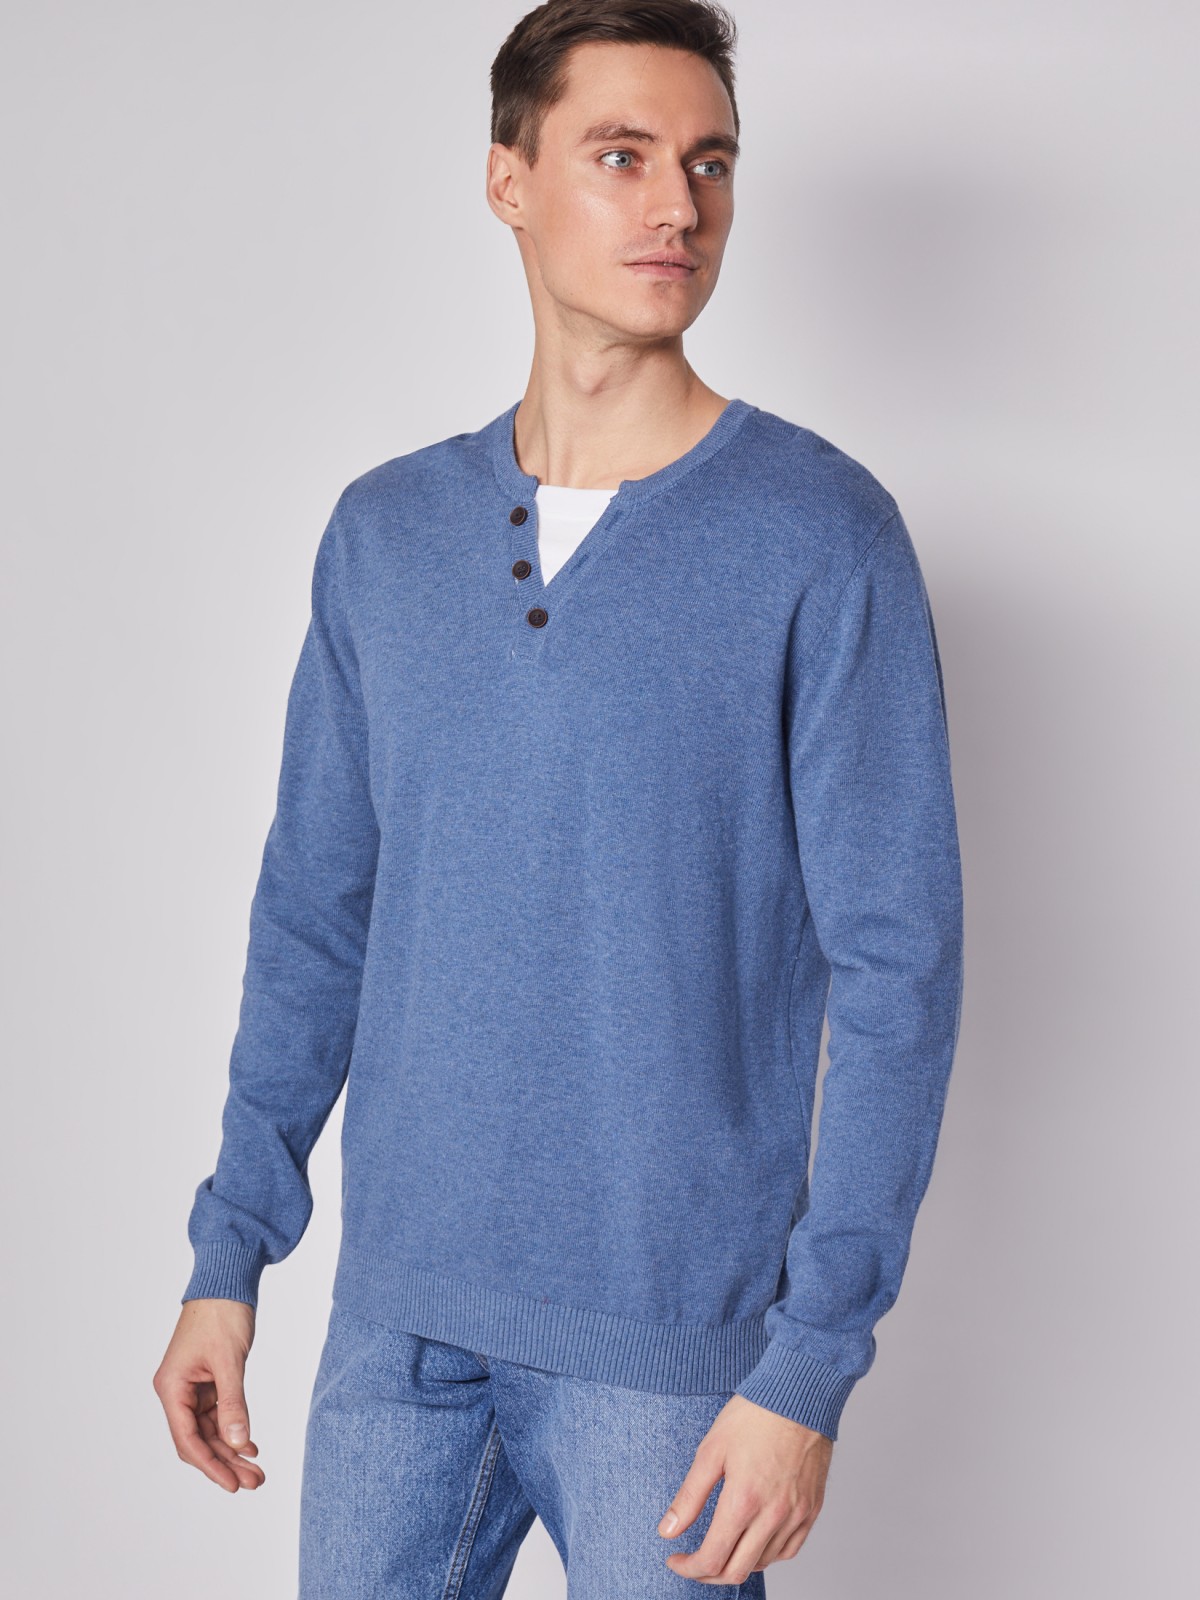 Комбинированный пуловер из хлопка zolla 212116765022, цвет голубой, размер M - фото 3